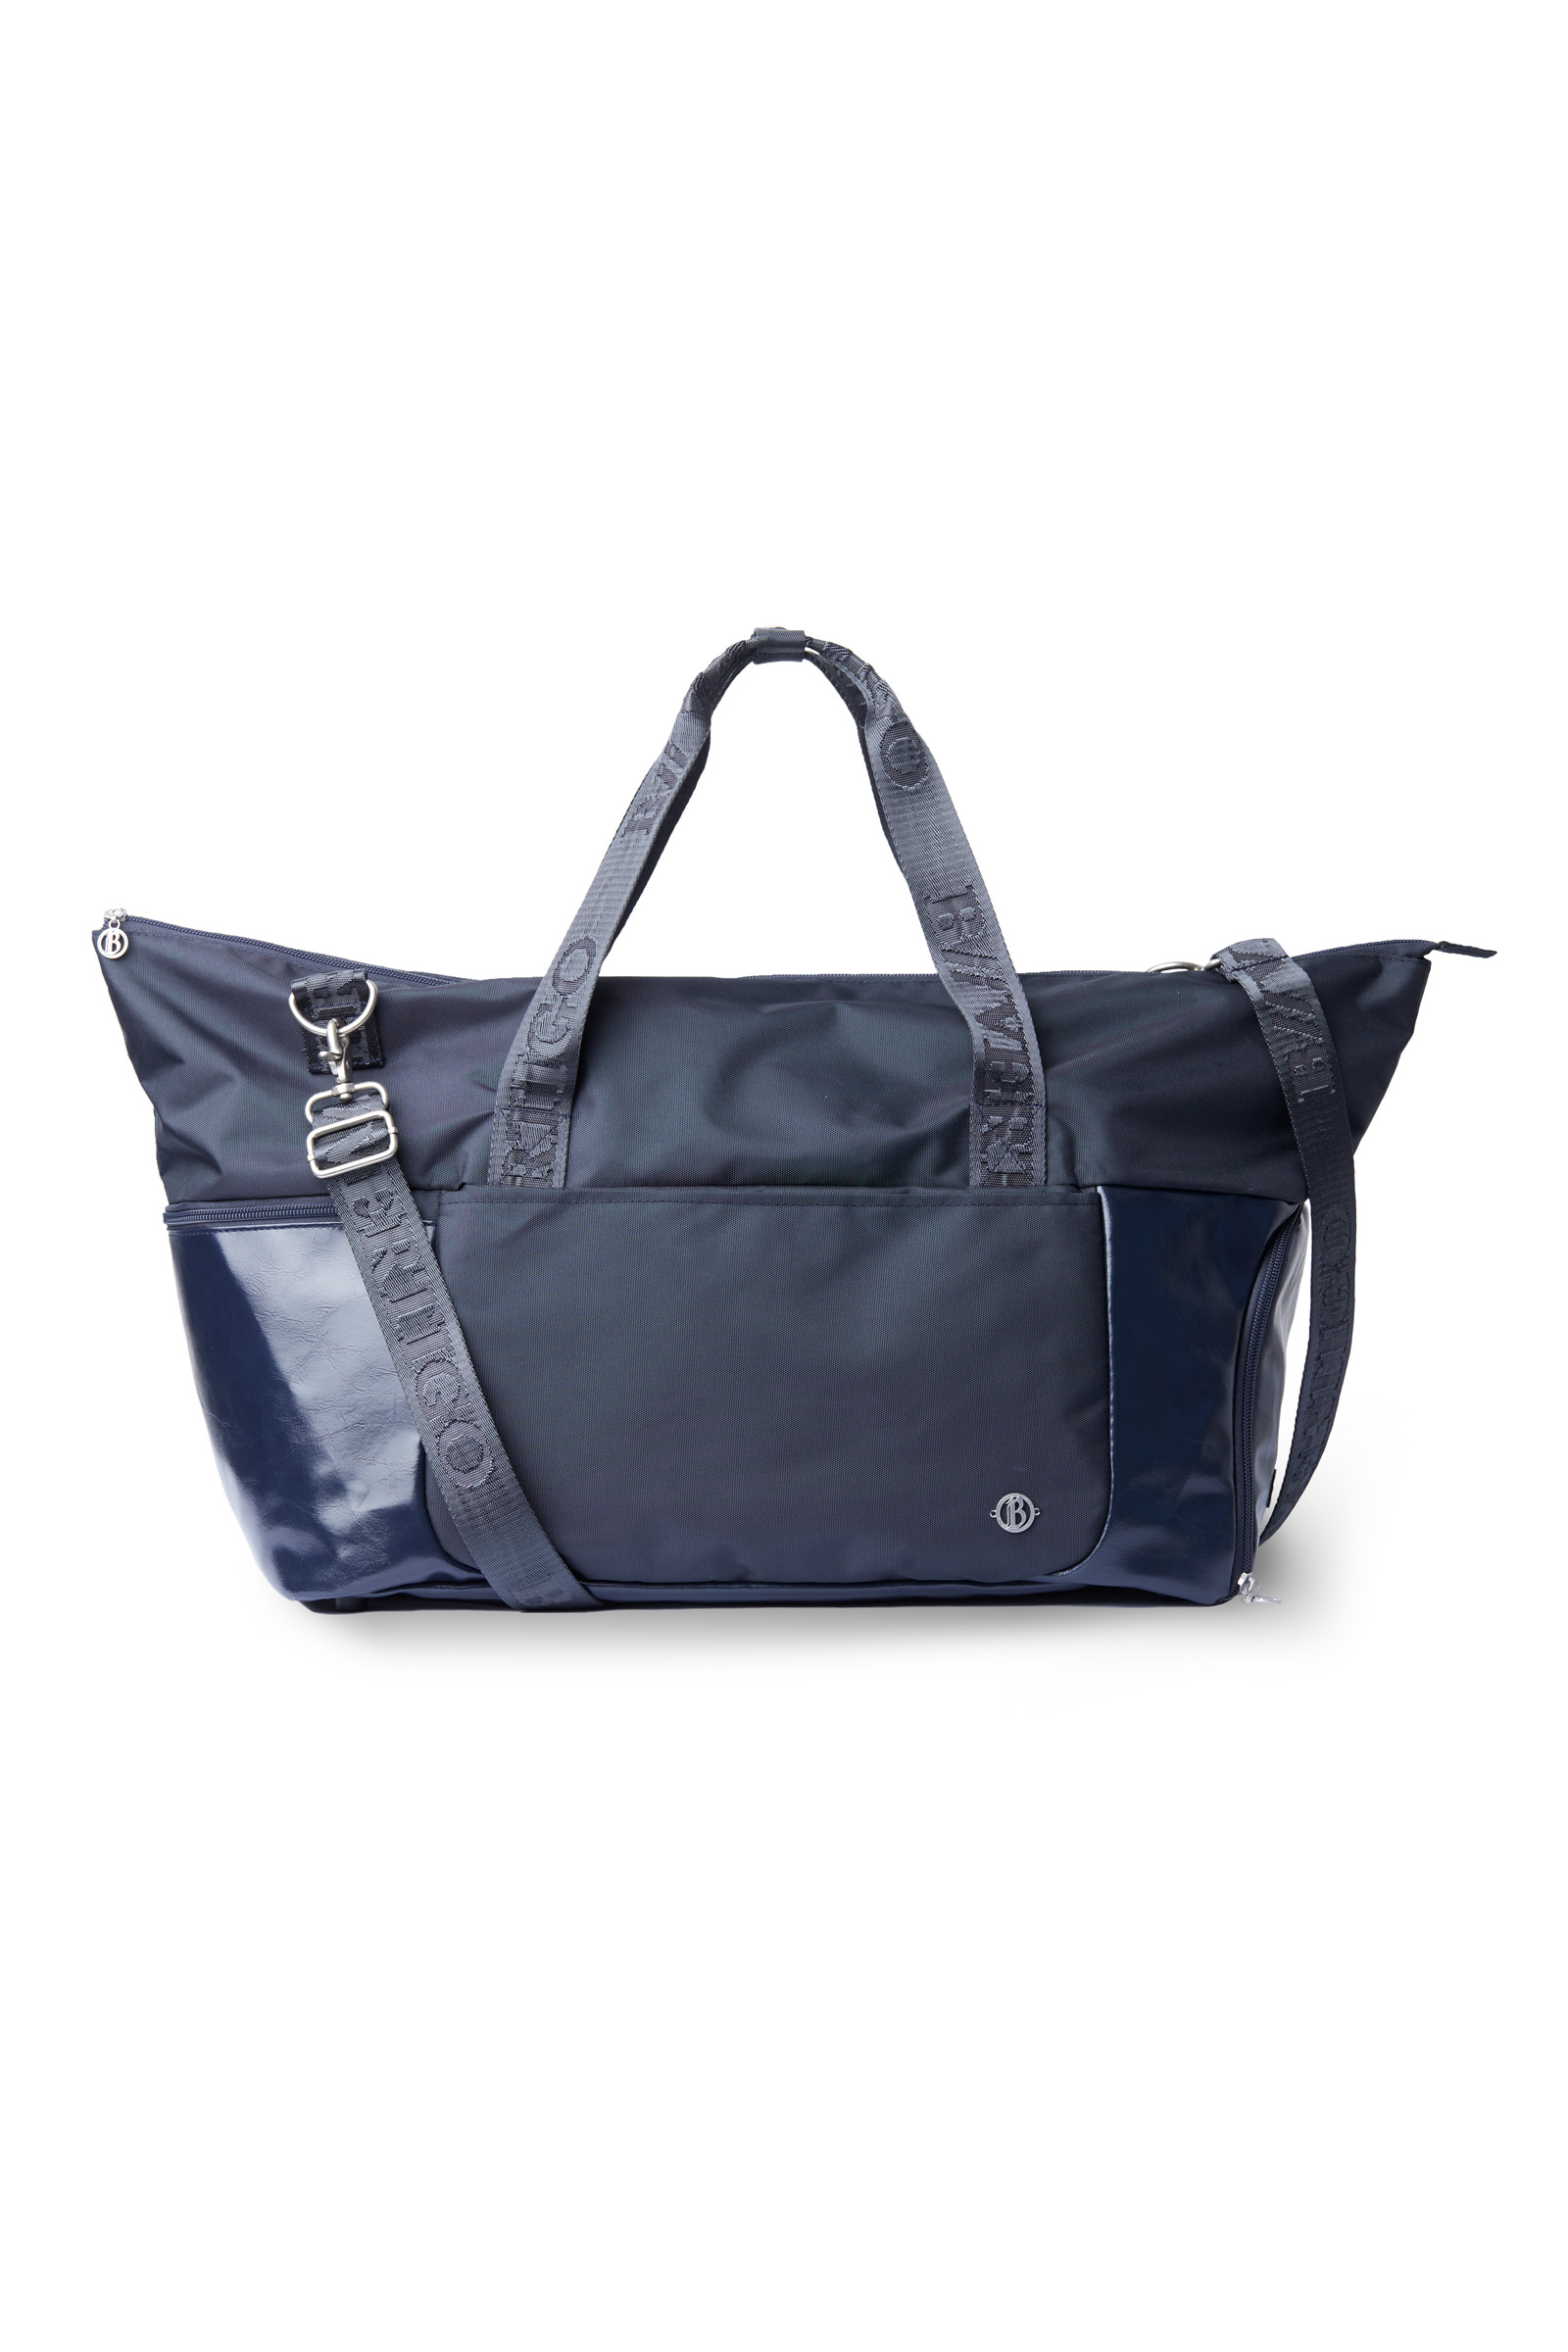 Buy B Vertigo Duffle Bag with Shoe Compartment